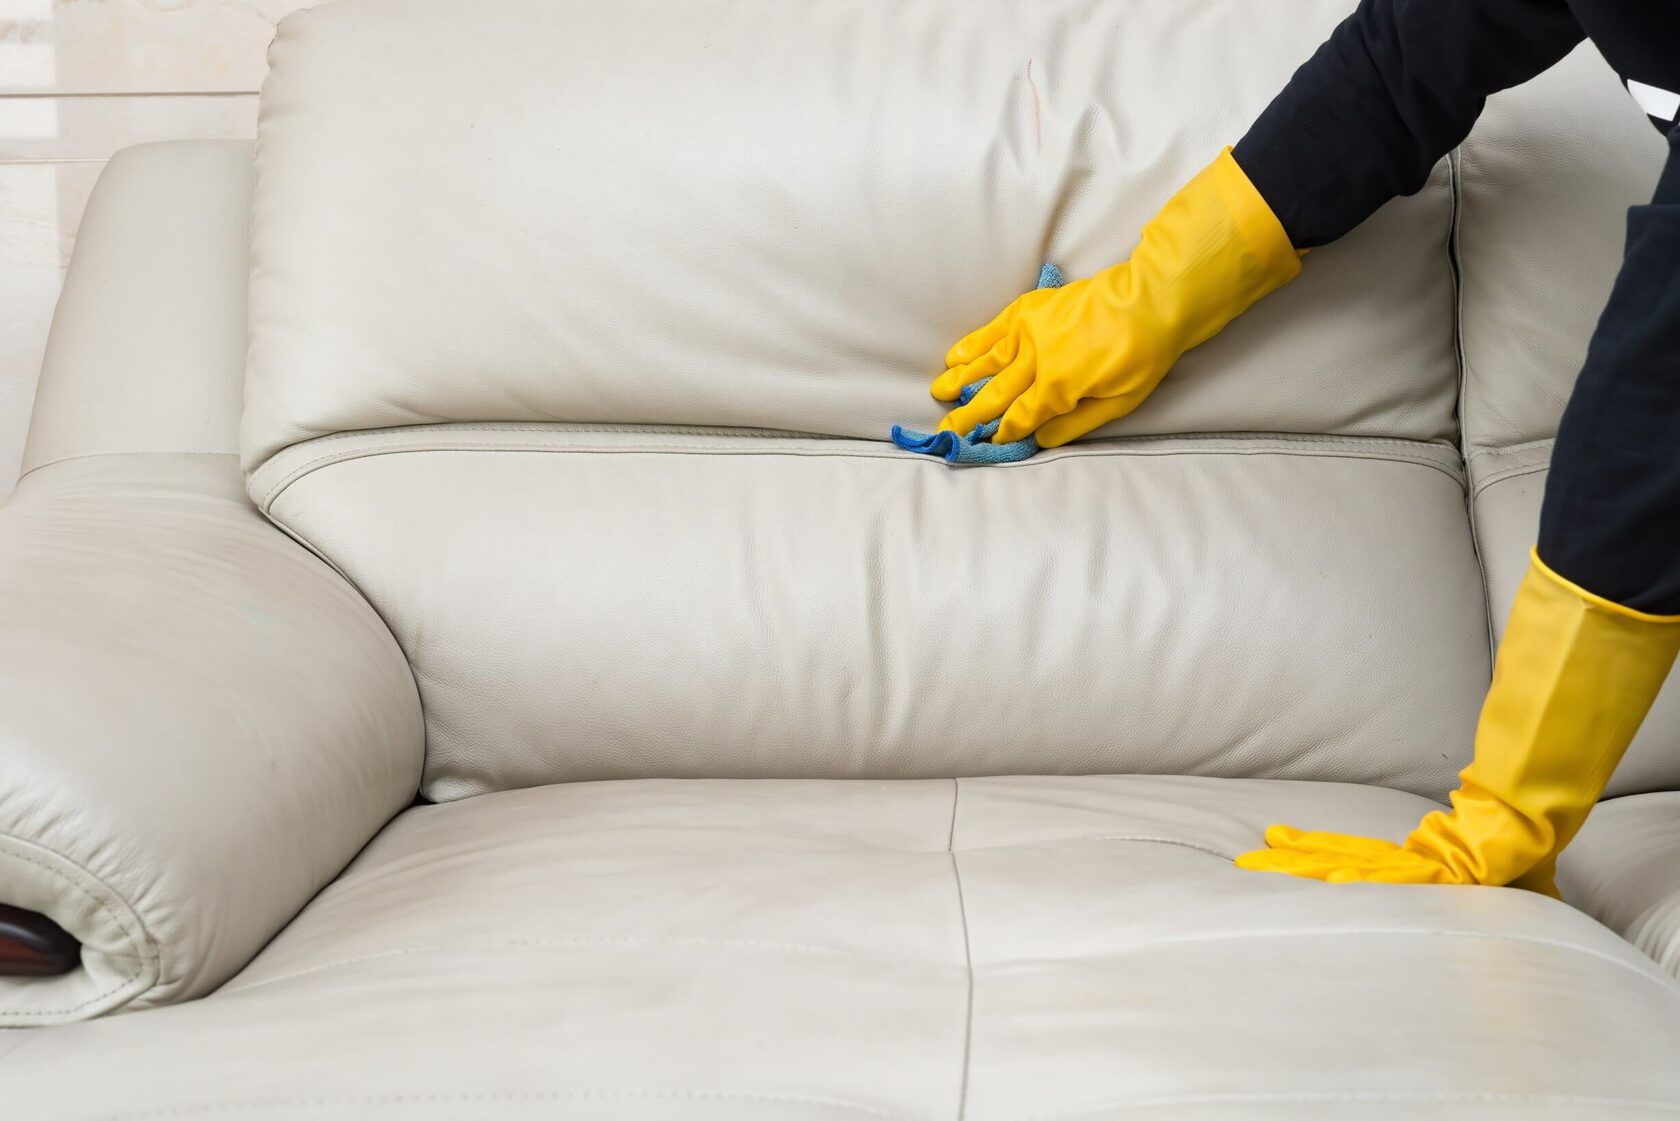 помыть мягкую мебель в домашних условиях быстро и эффективно